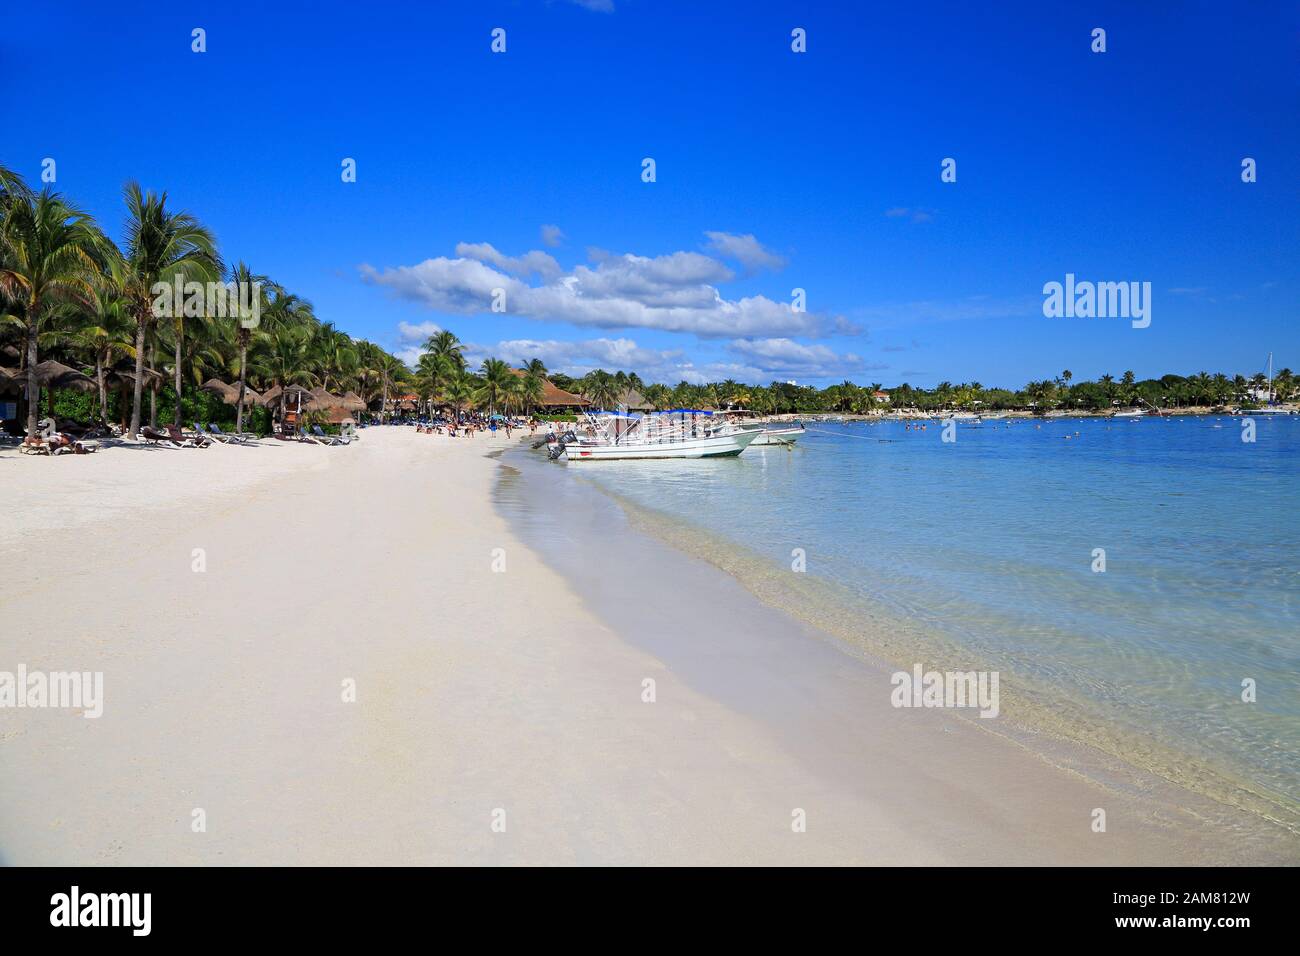 Spiaggia bianca caraibica con barche da pesca nella Riviera Maya, costa dello Yucatan, Quintana Roo, Messico Foto Stock